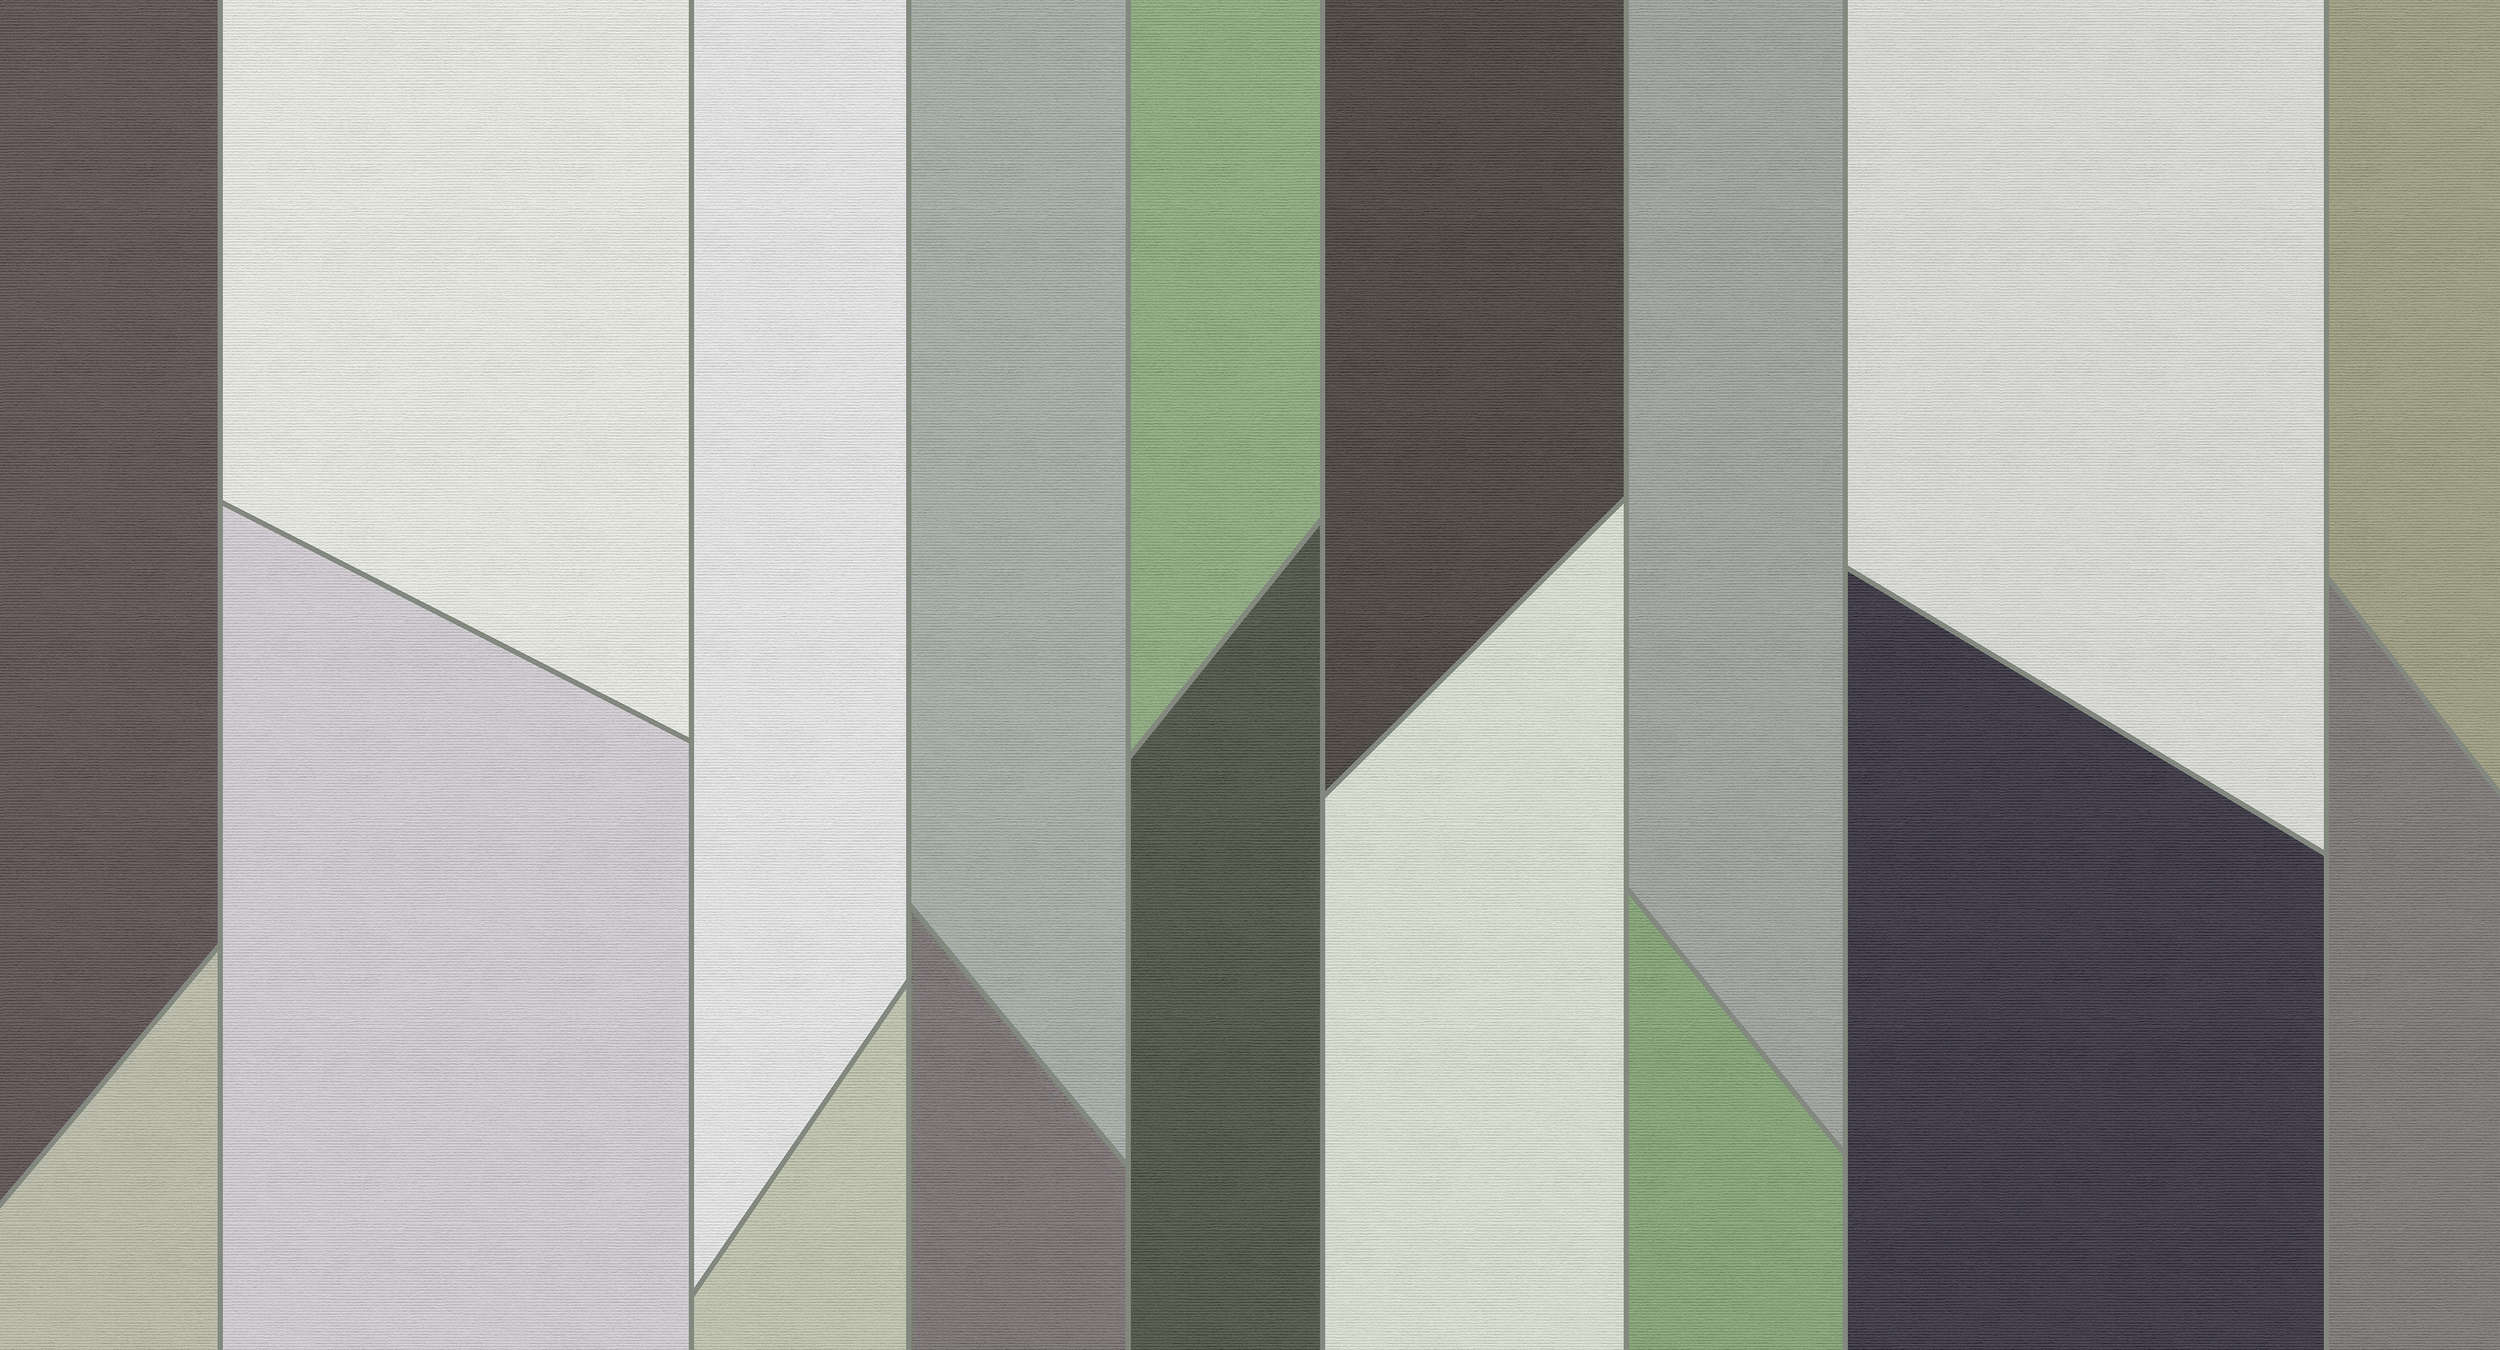             Geometry 3 - Papel pintado a rayas en estructura acanalada con diseño retro colorido - Verde, Violeta | Tela no tejida lisa mate
        